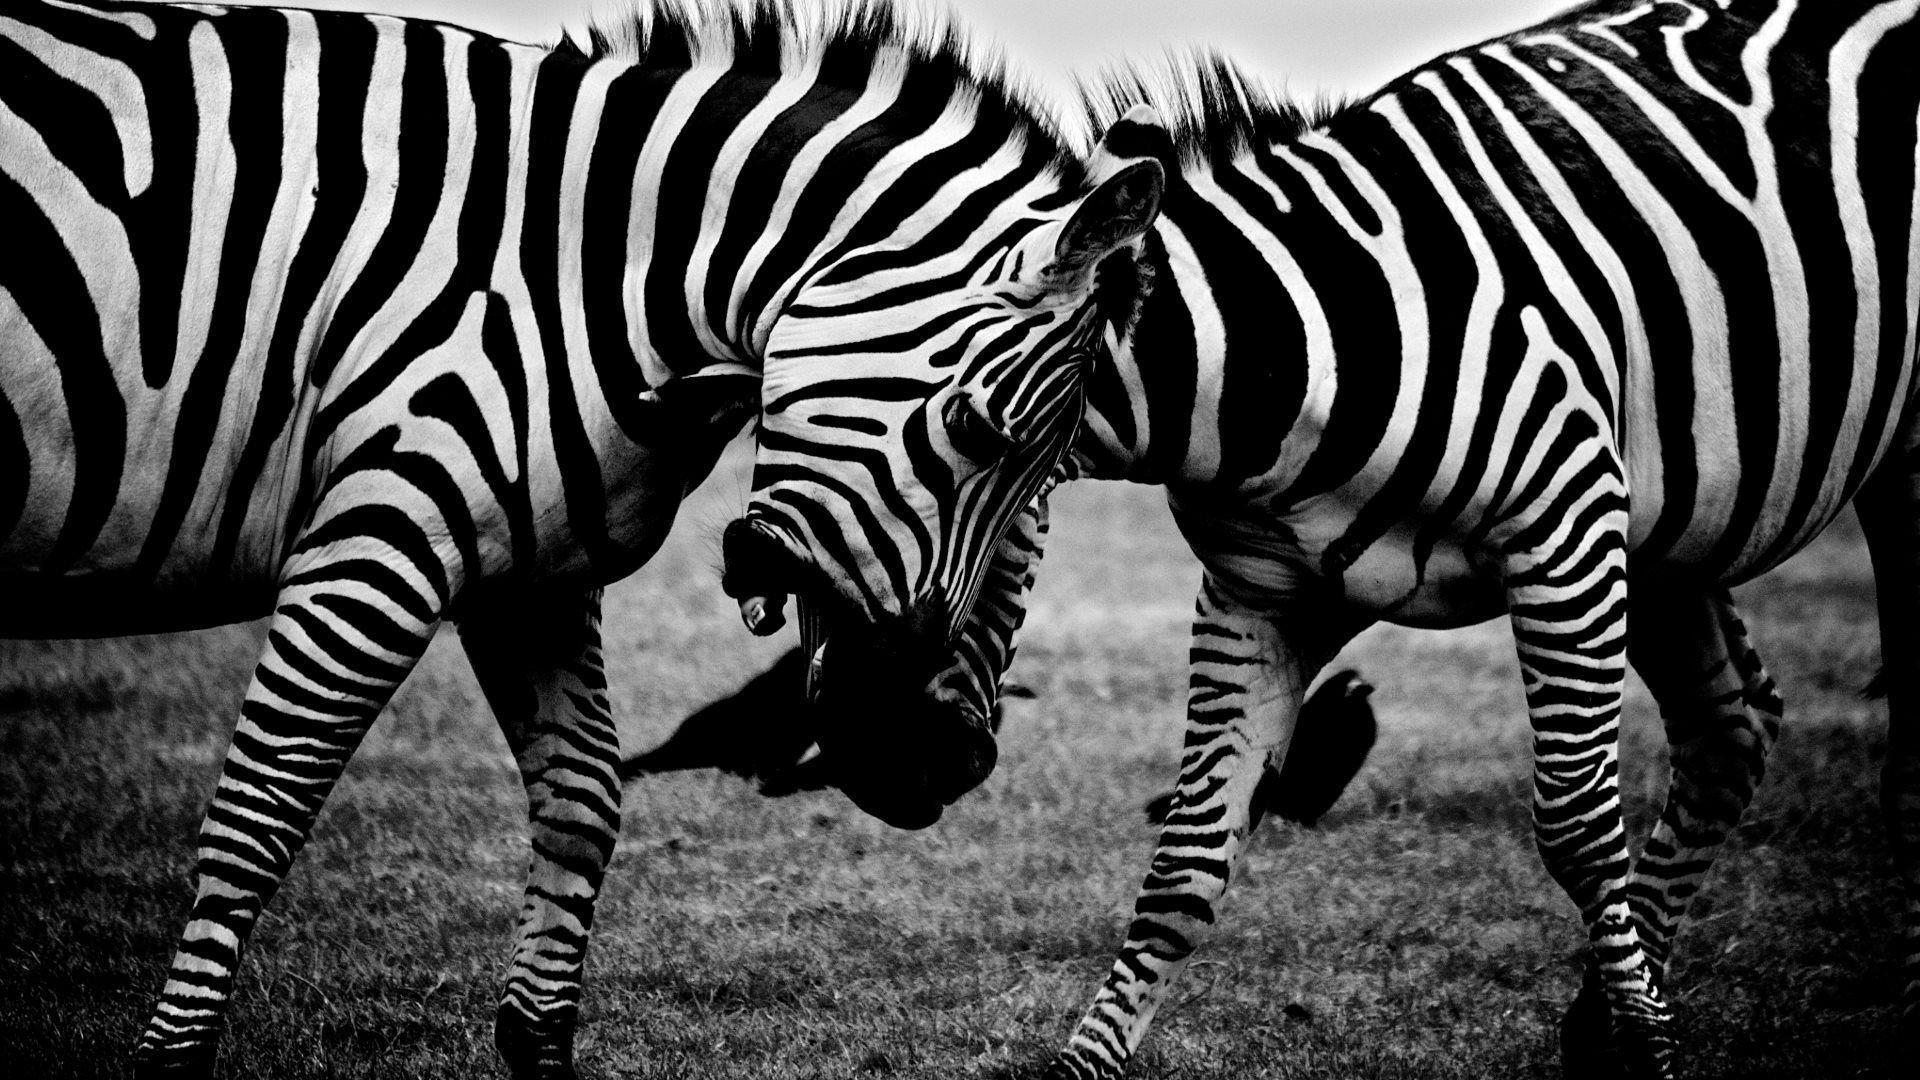 Fighting zebras HD desktop wallpaper, Widescreen, High